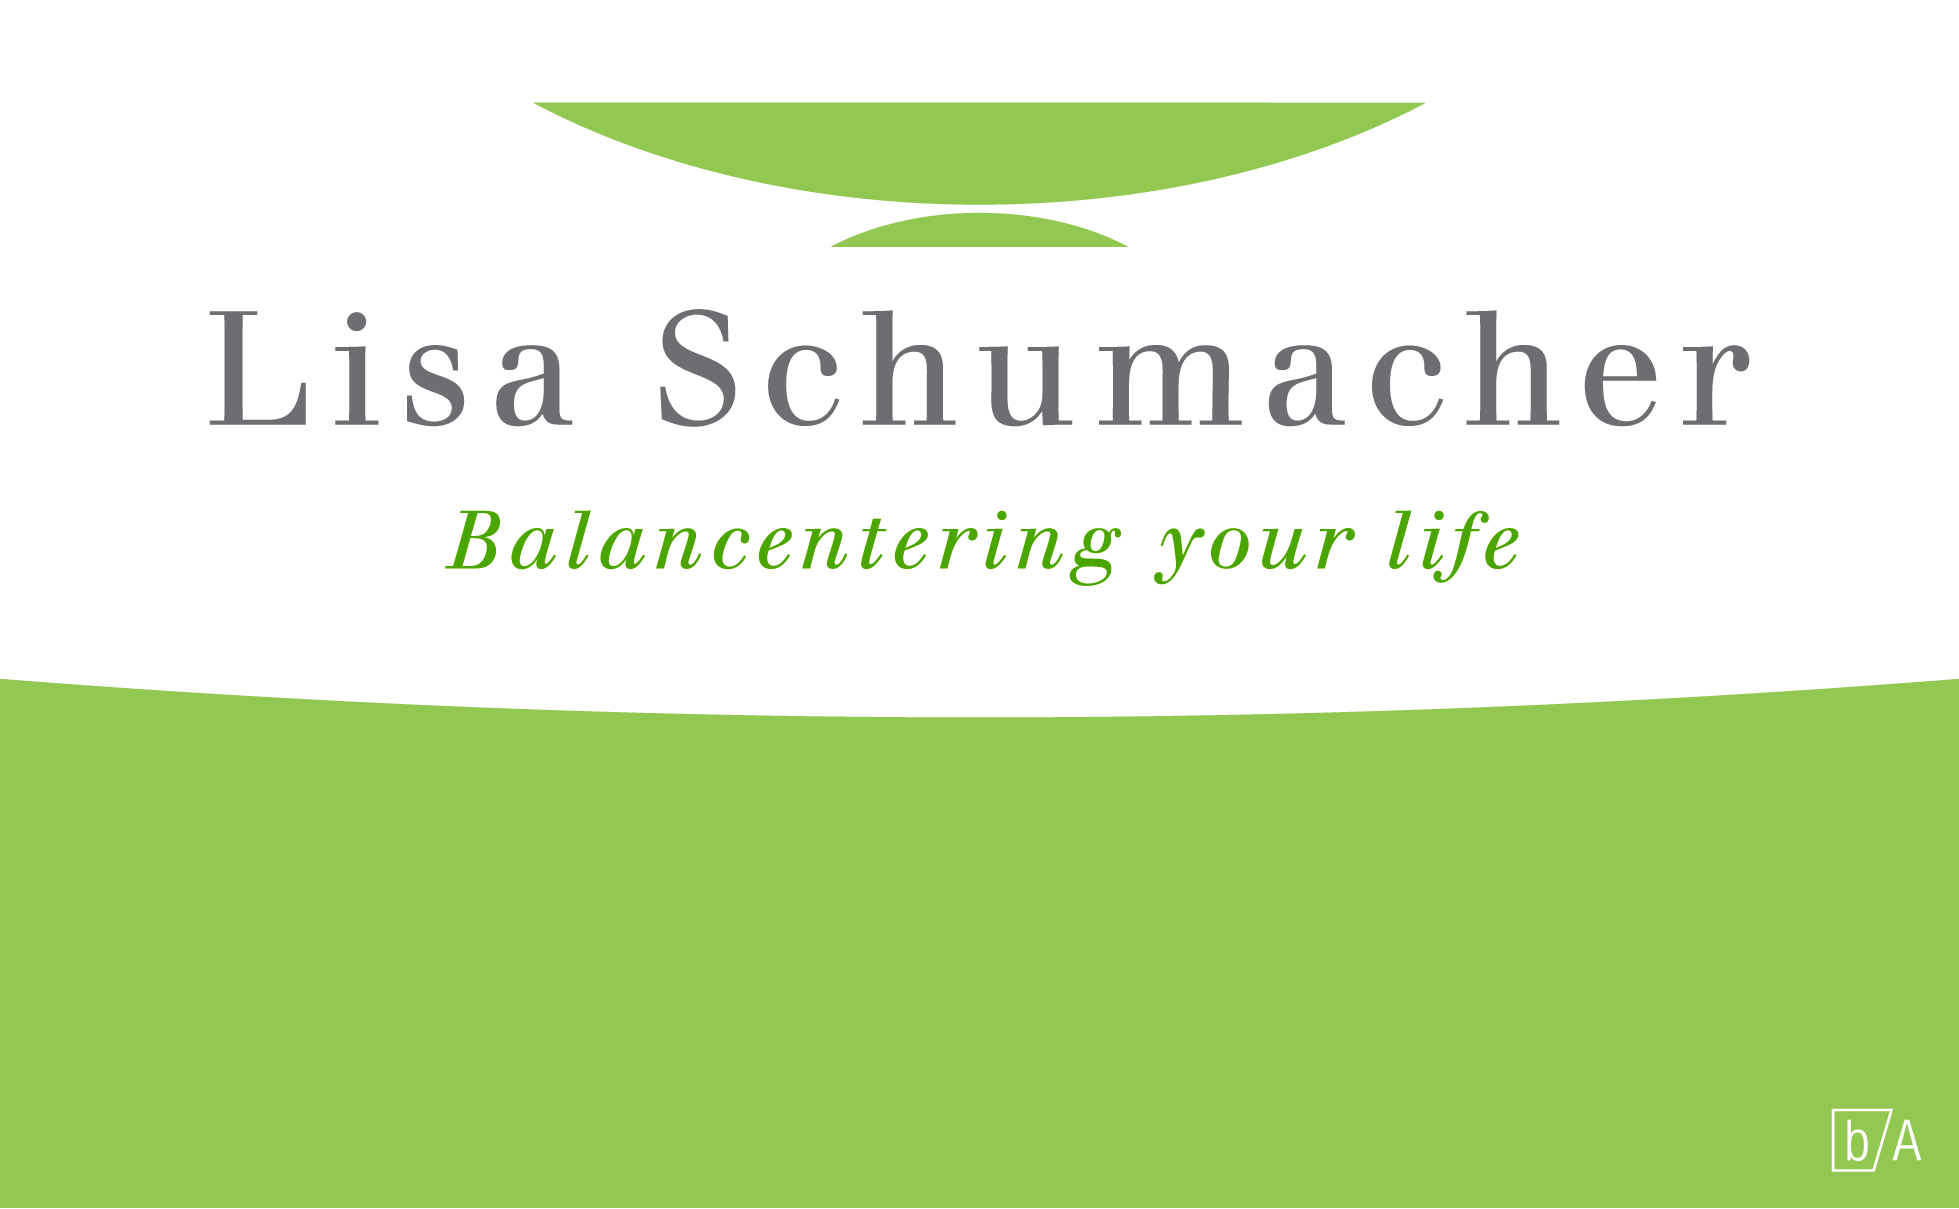 Lisa Schumacher